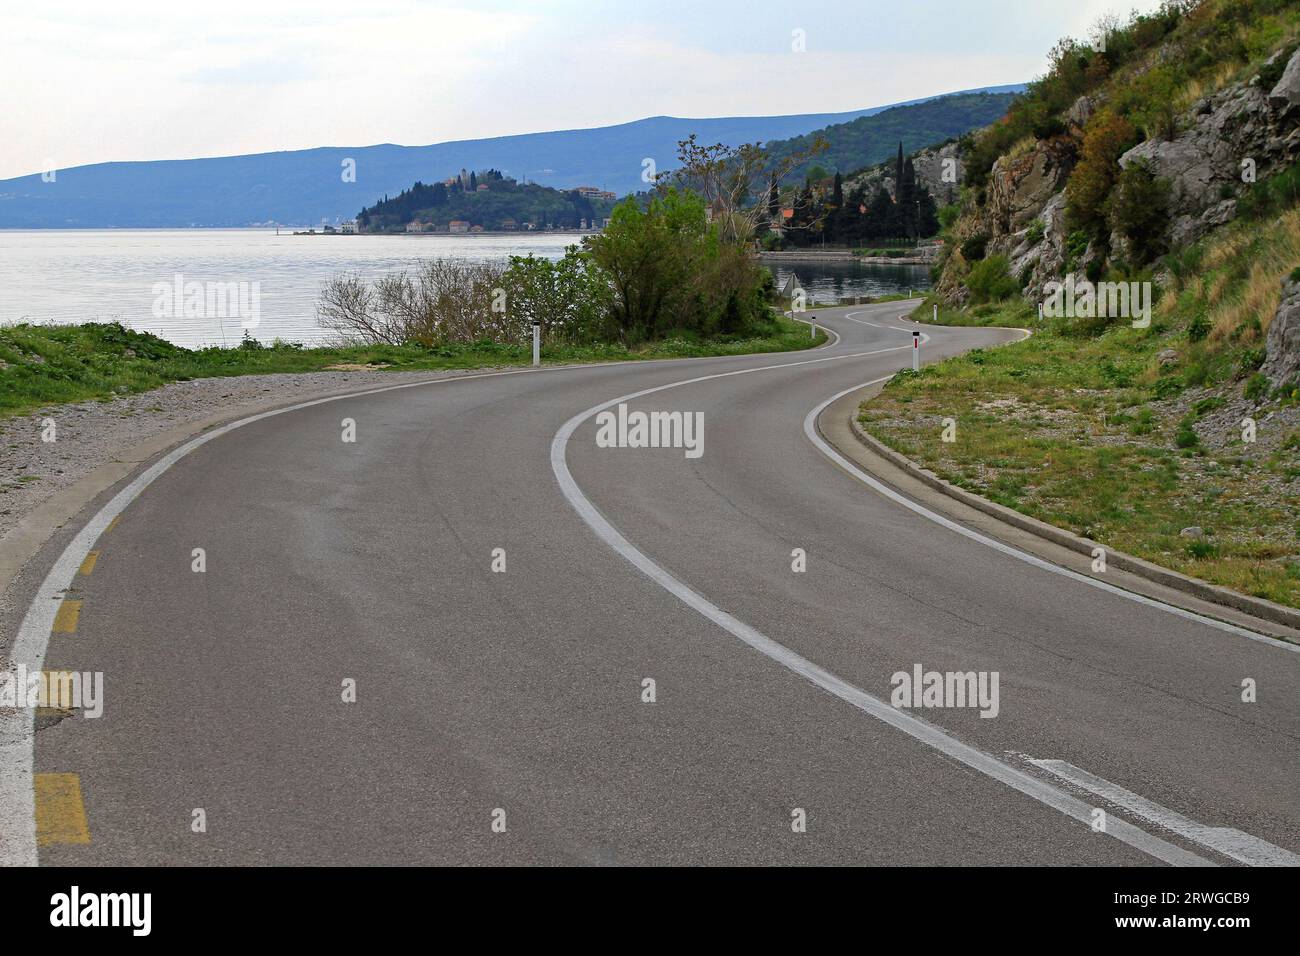 Route sinueuse le long de la mer Adriatique au Monténégro Scenic route Banque D'Images